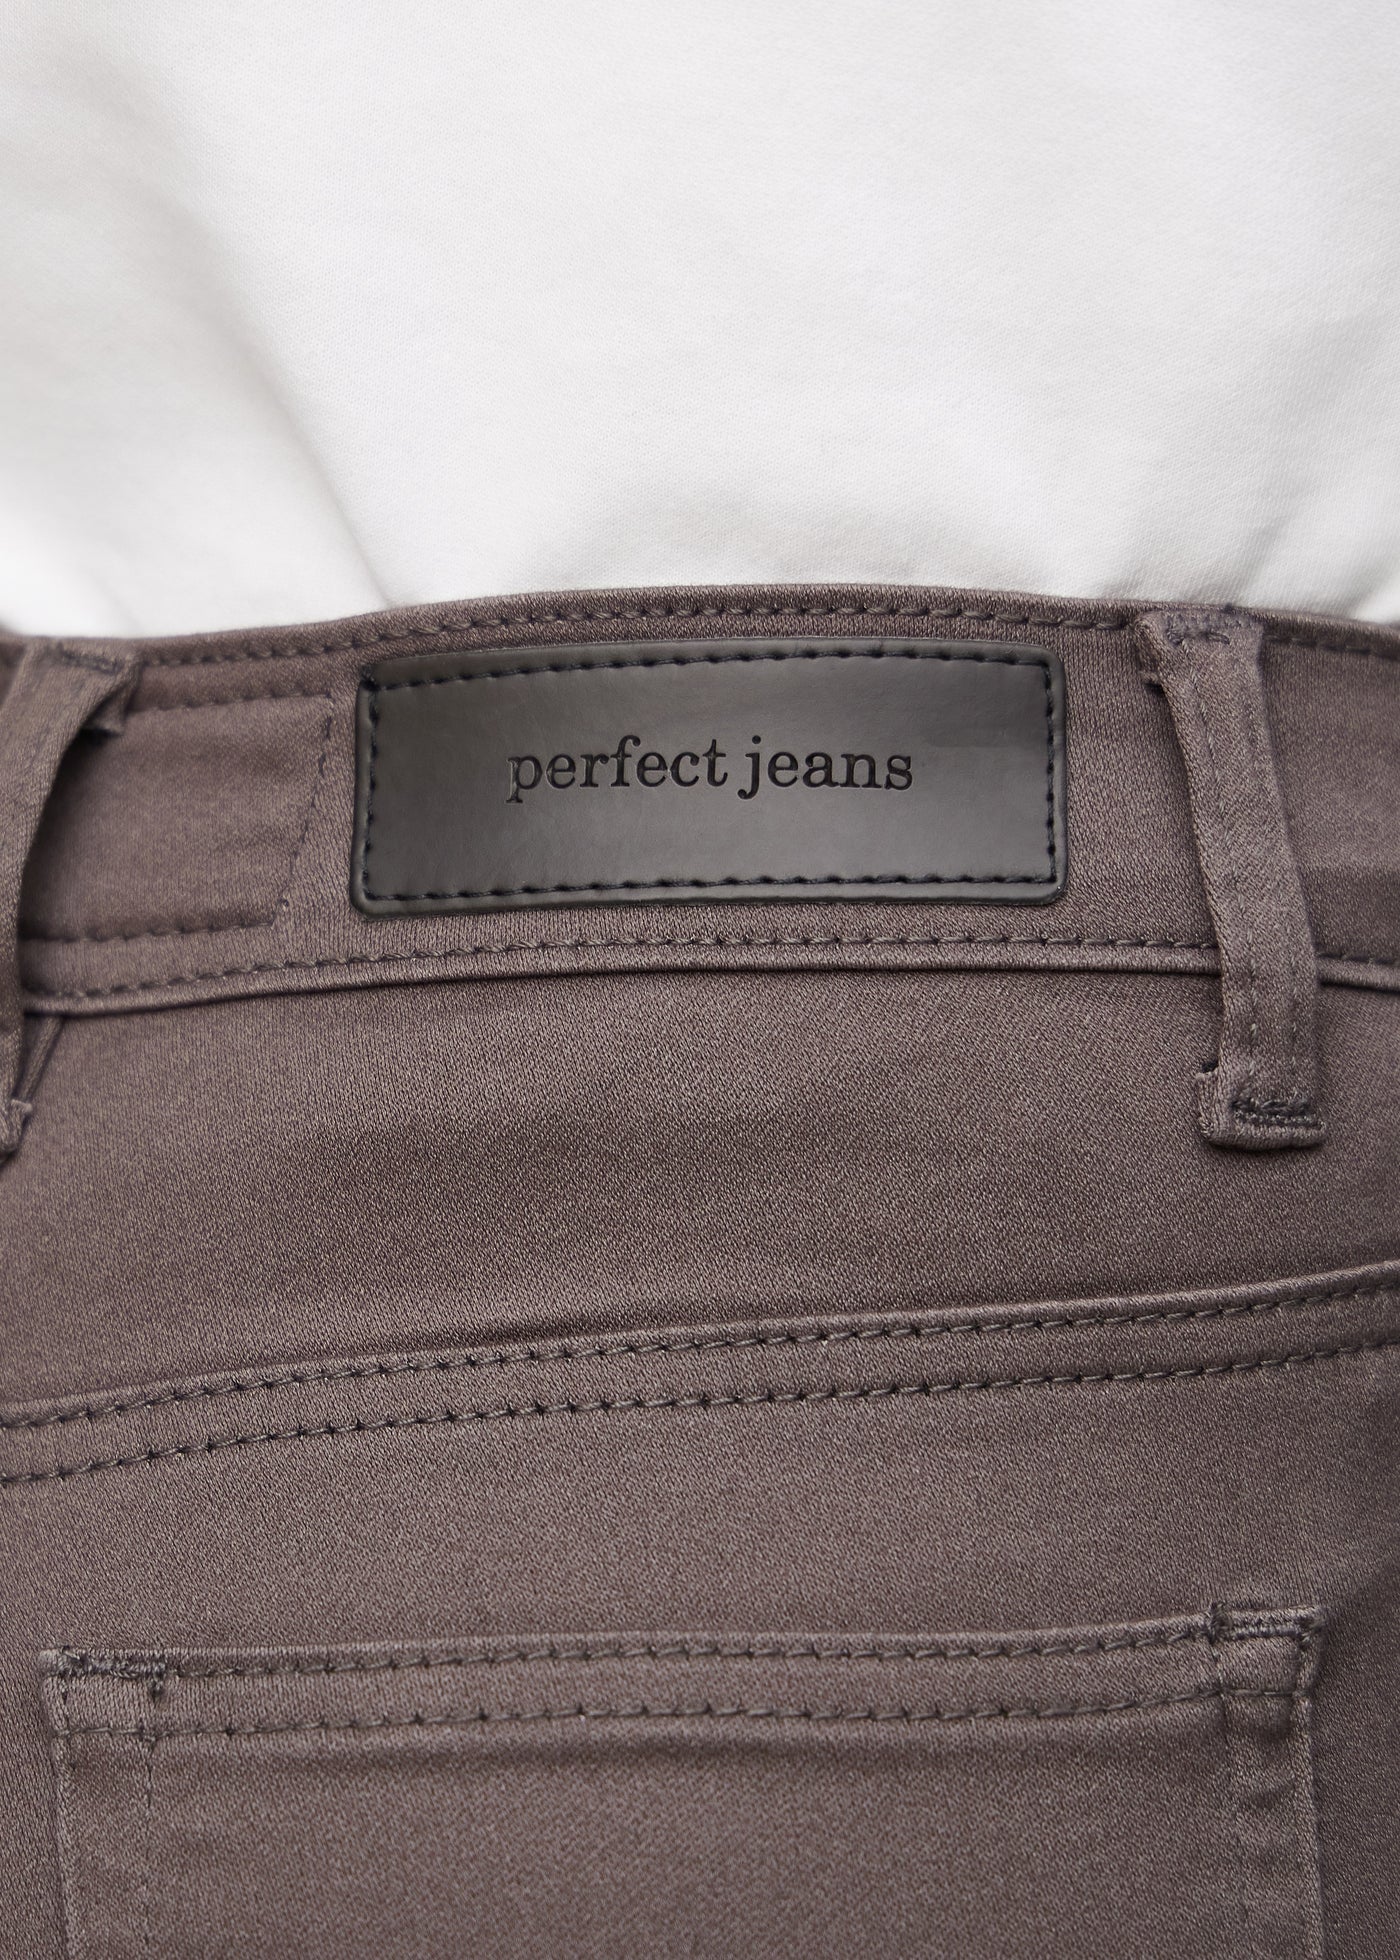 Baglommen på et par gråbrune jeans, hvor man kan se logoet.